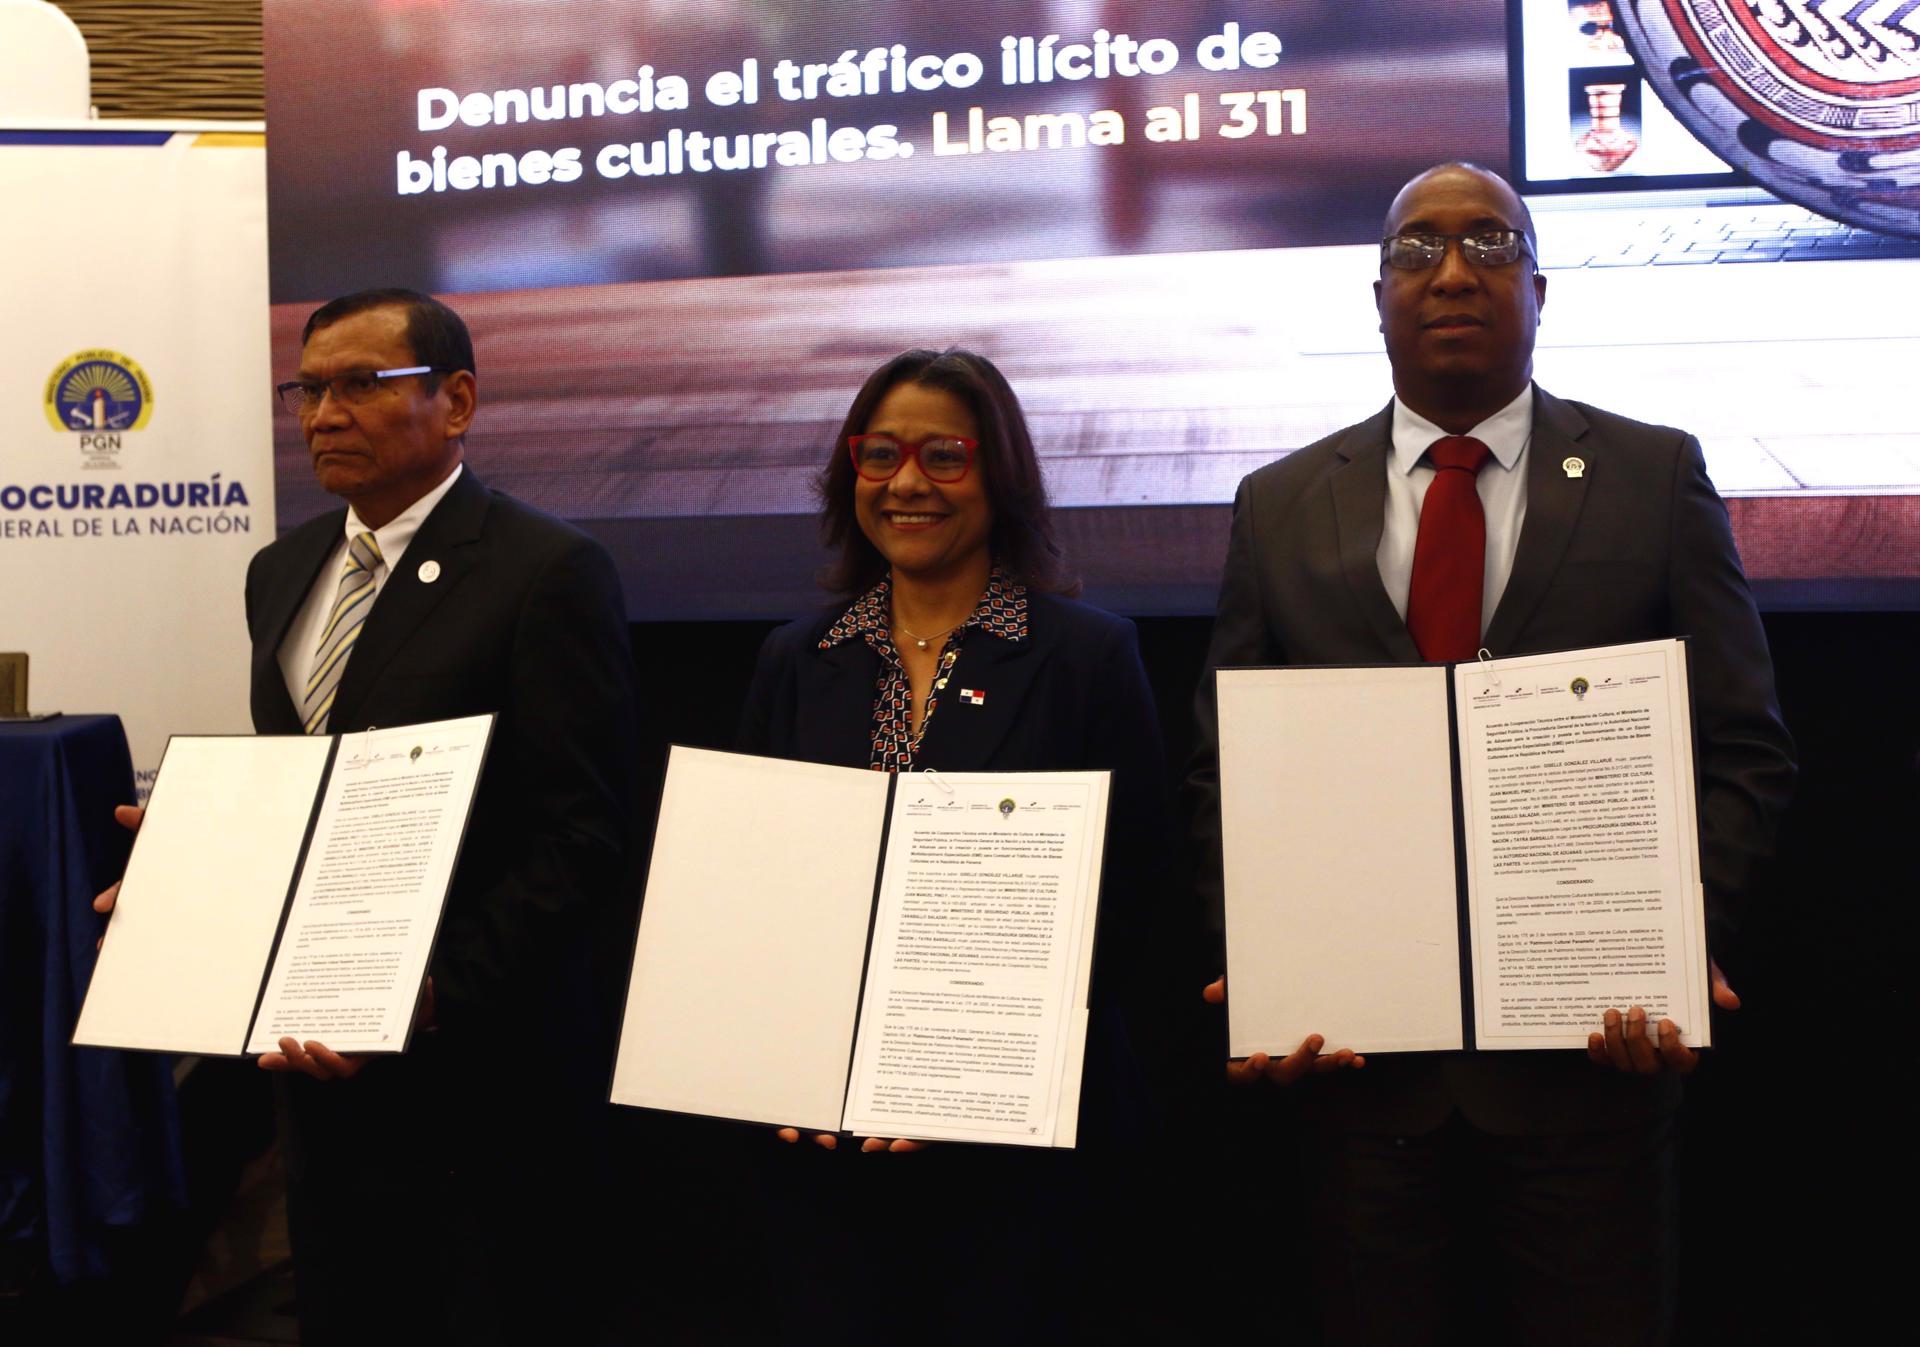 Panamá se unió para combatir el tráfico ilícito de bienes culturales